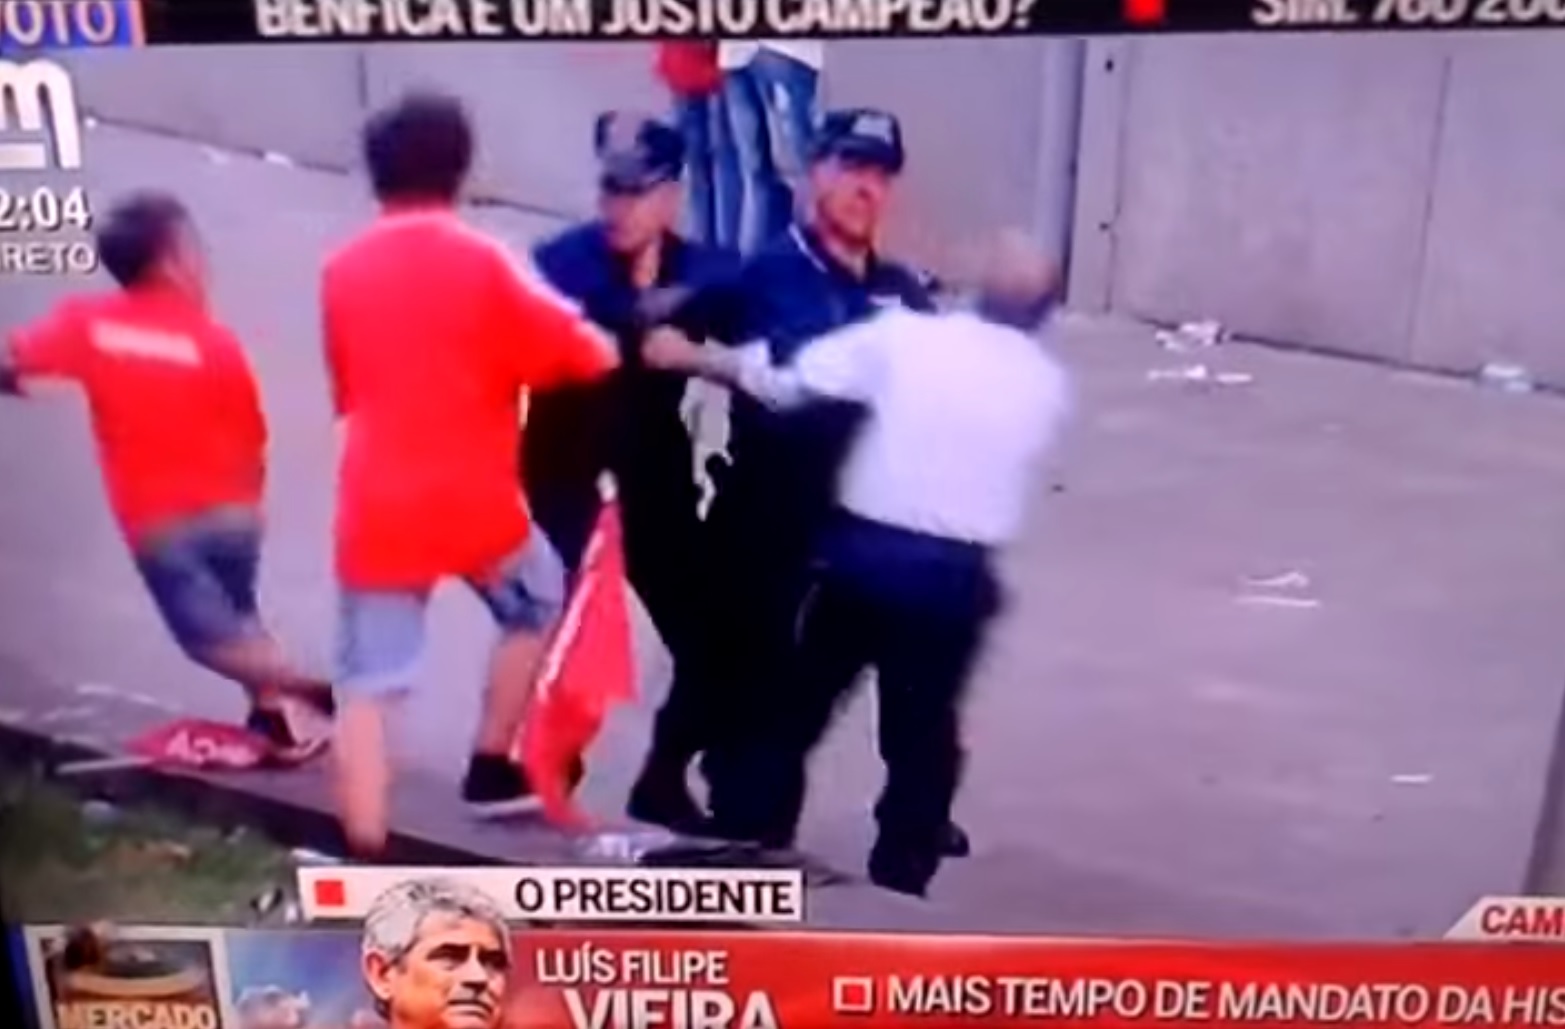 PSP instaura processo disciplinar contra oficial que agrediu homem em Guimarães